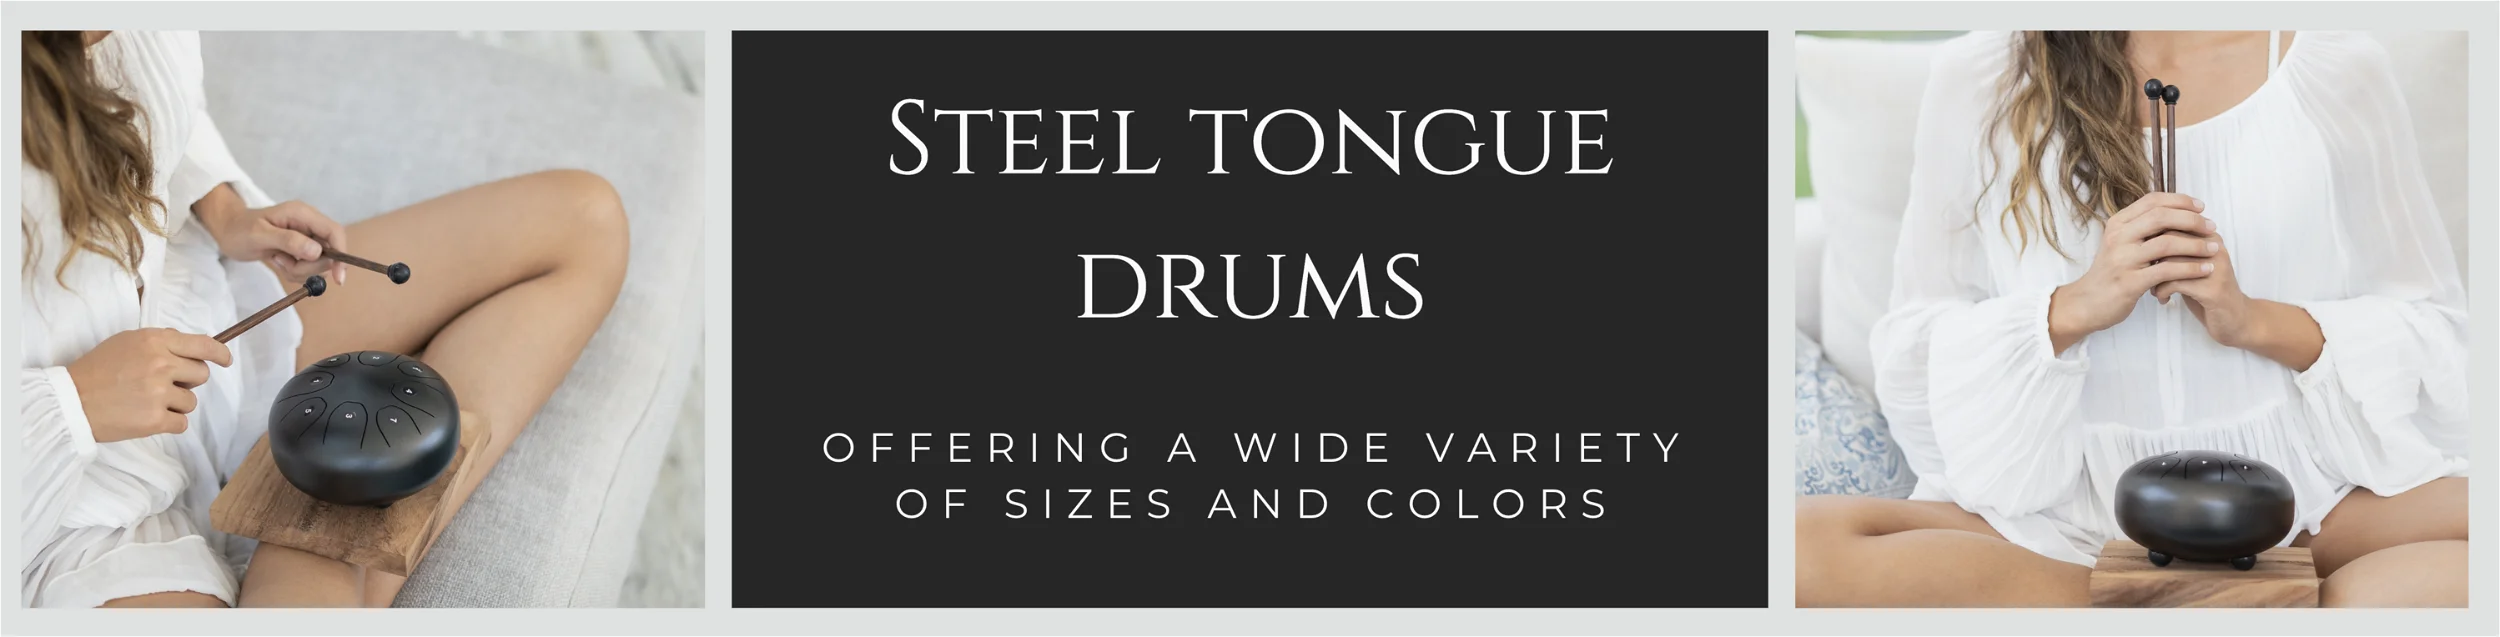 Steel Tongue Drums